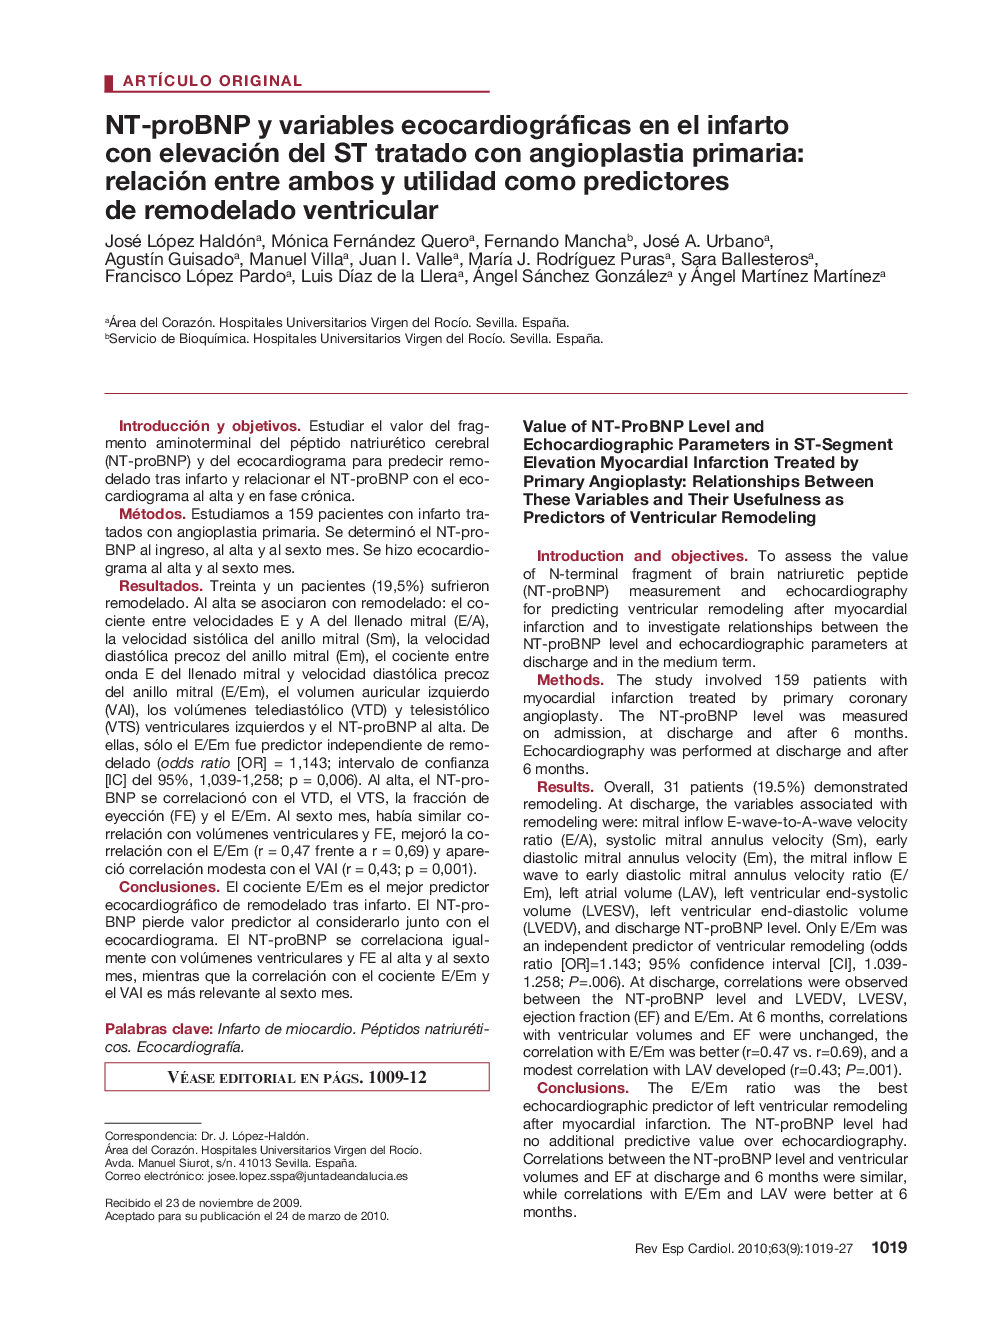 NT-proBNP y variables ecocardiográficas en el infarto con elevación del ST tratado con angioplastia primaria: relación entre ambos y utilidad como predictores de remodelado ventricular